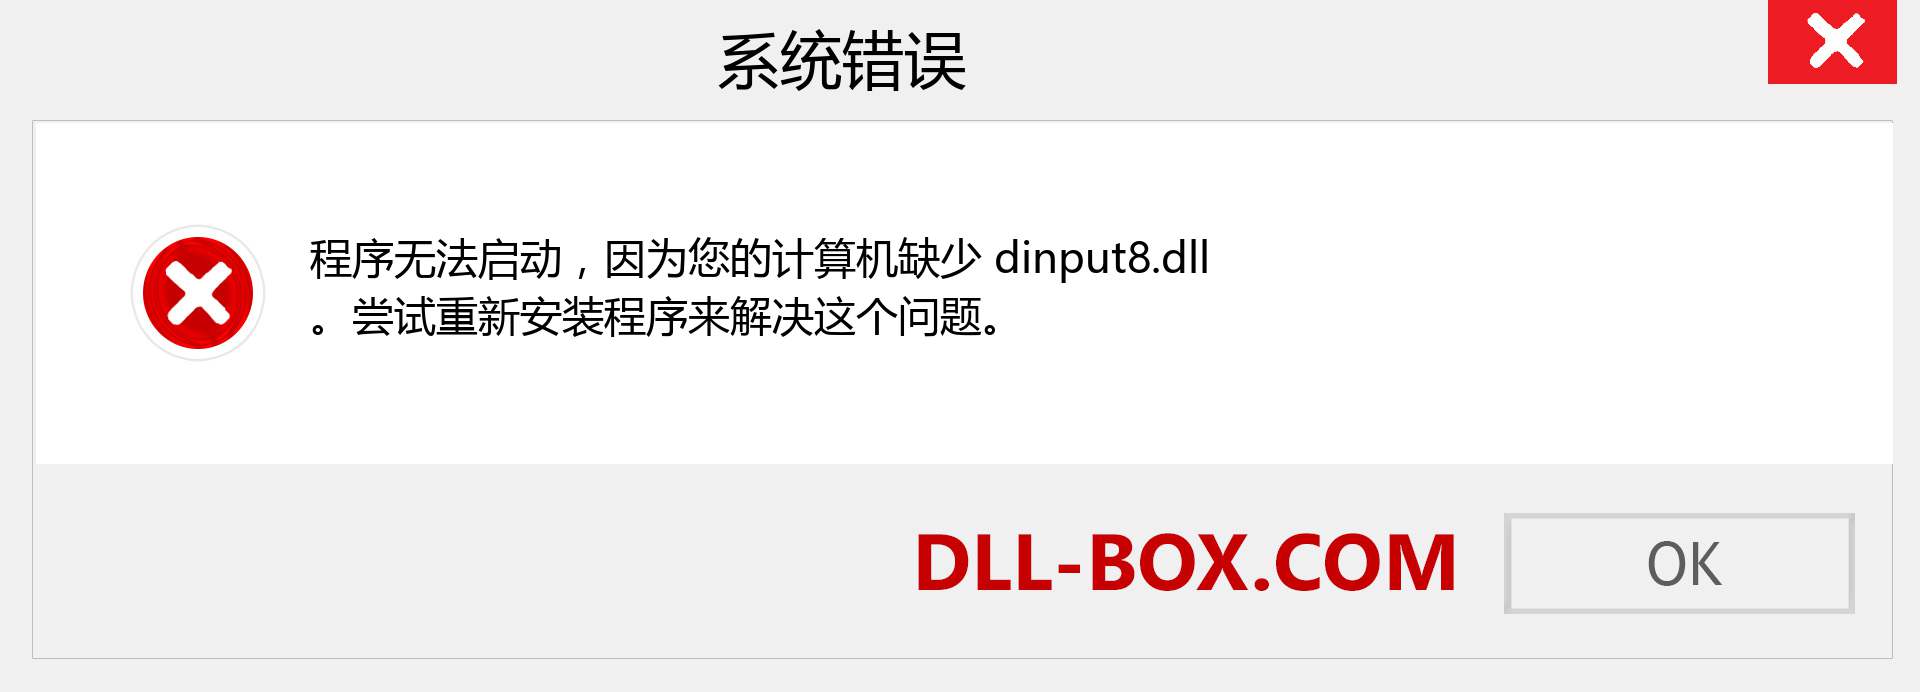 dinput8.dll 文件丢失？。 适用于 Windows 7、8、10 的下载 - 修复 Windows、照片、图像上的 dinput8 dll 丢失错误